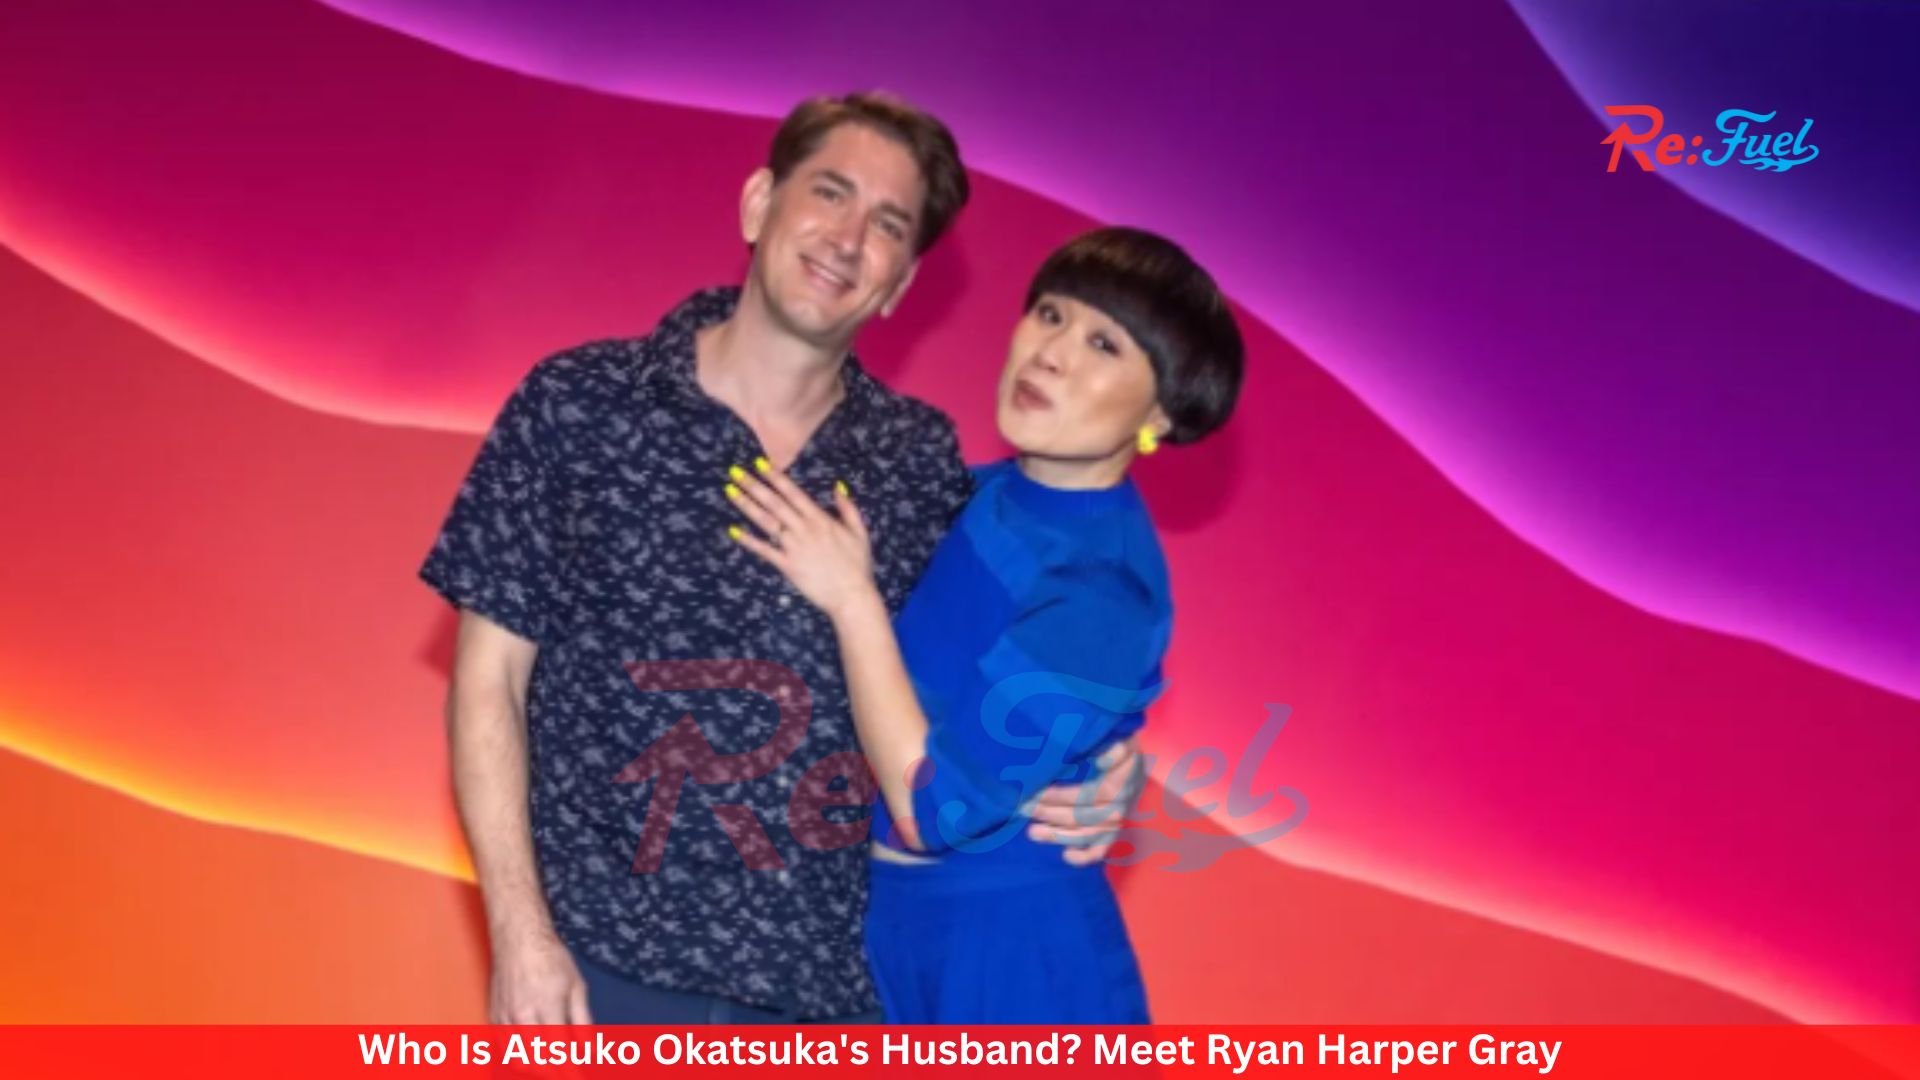 Who Is Atsuko Okatsuka's Husband? Meet Ryan Harper Gray